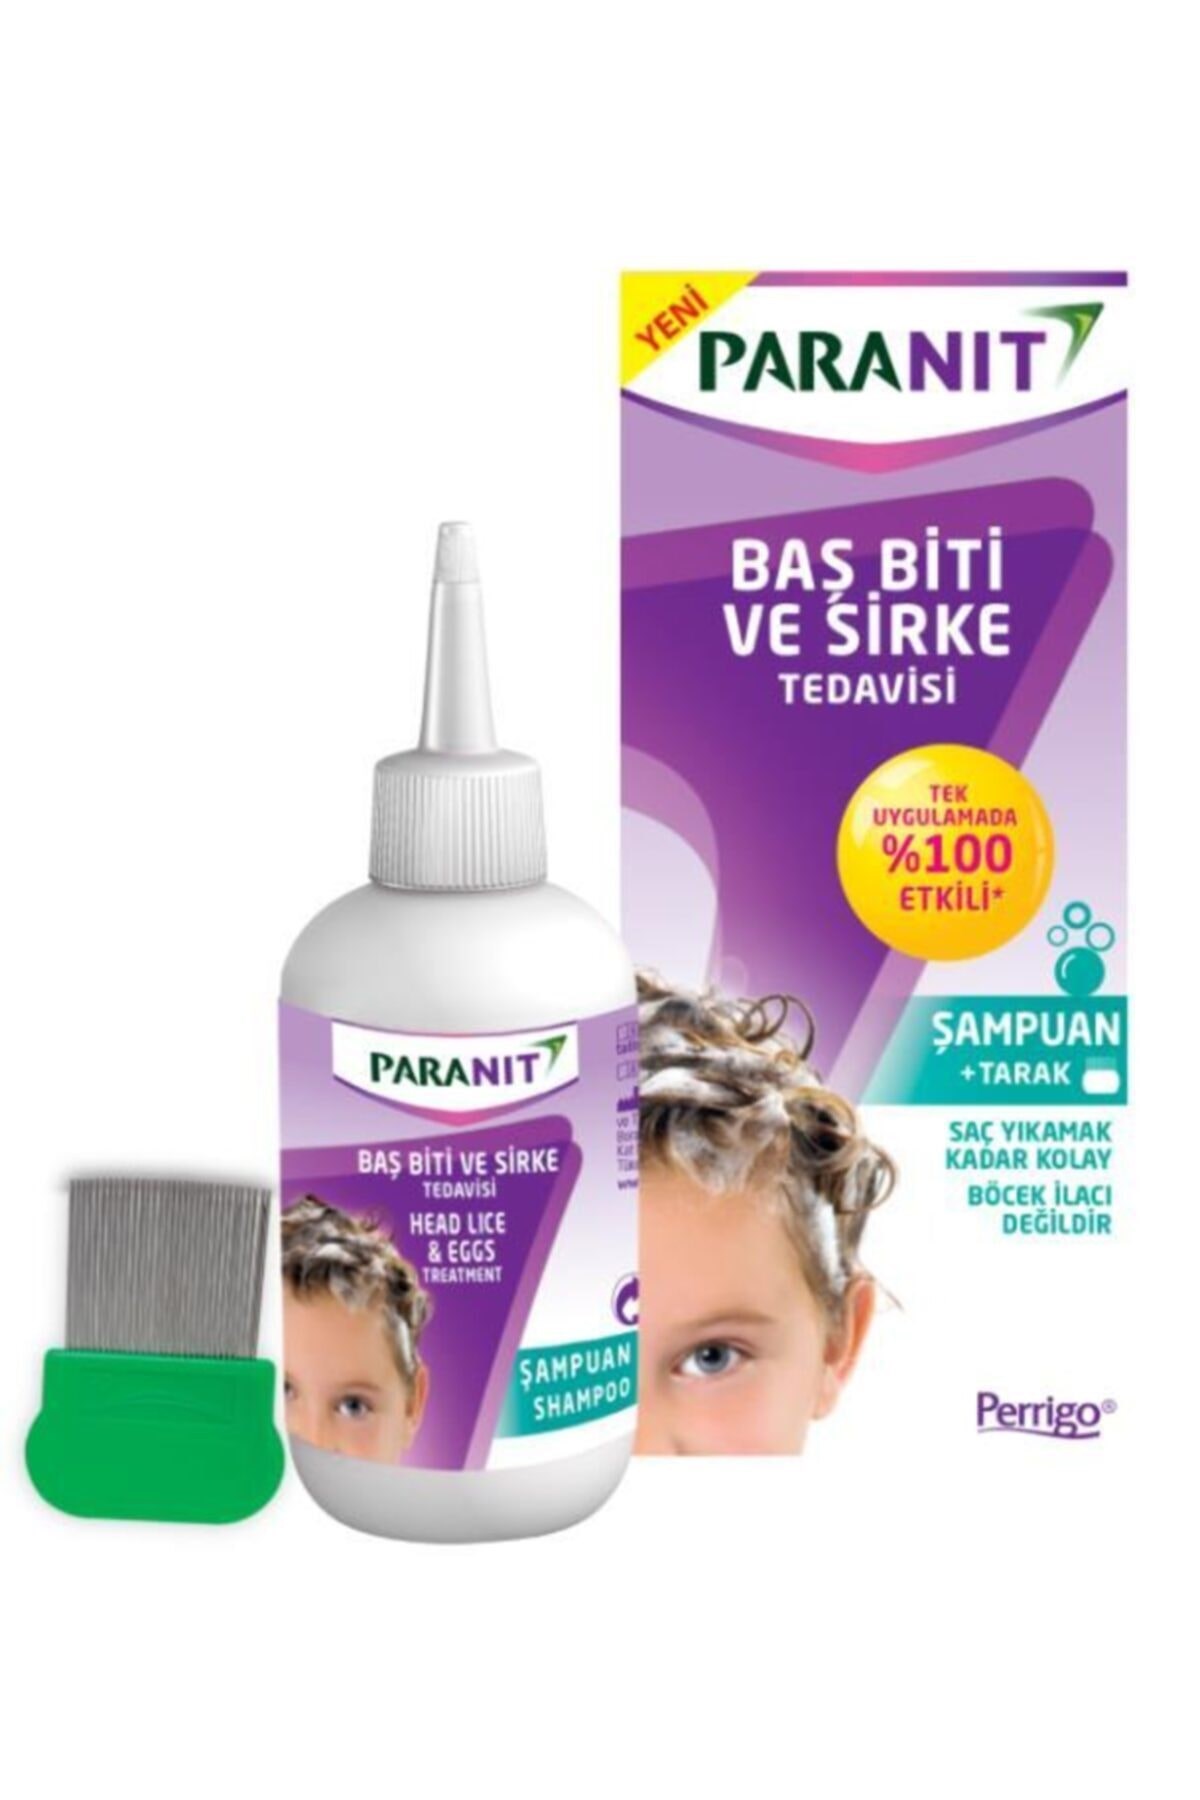 Paranit Baş Biti ve Sirke Tedavisi Şampuan+Tarak 100 ml - Böcek Kovucular -  Paranit Ürünleri Eczanemix.com'da!